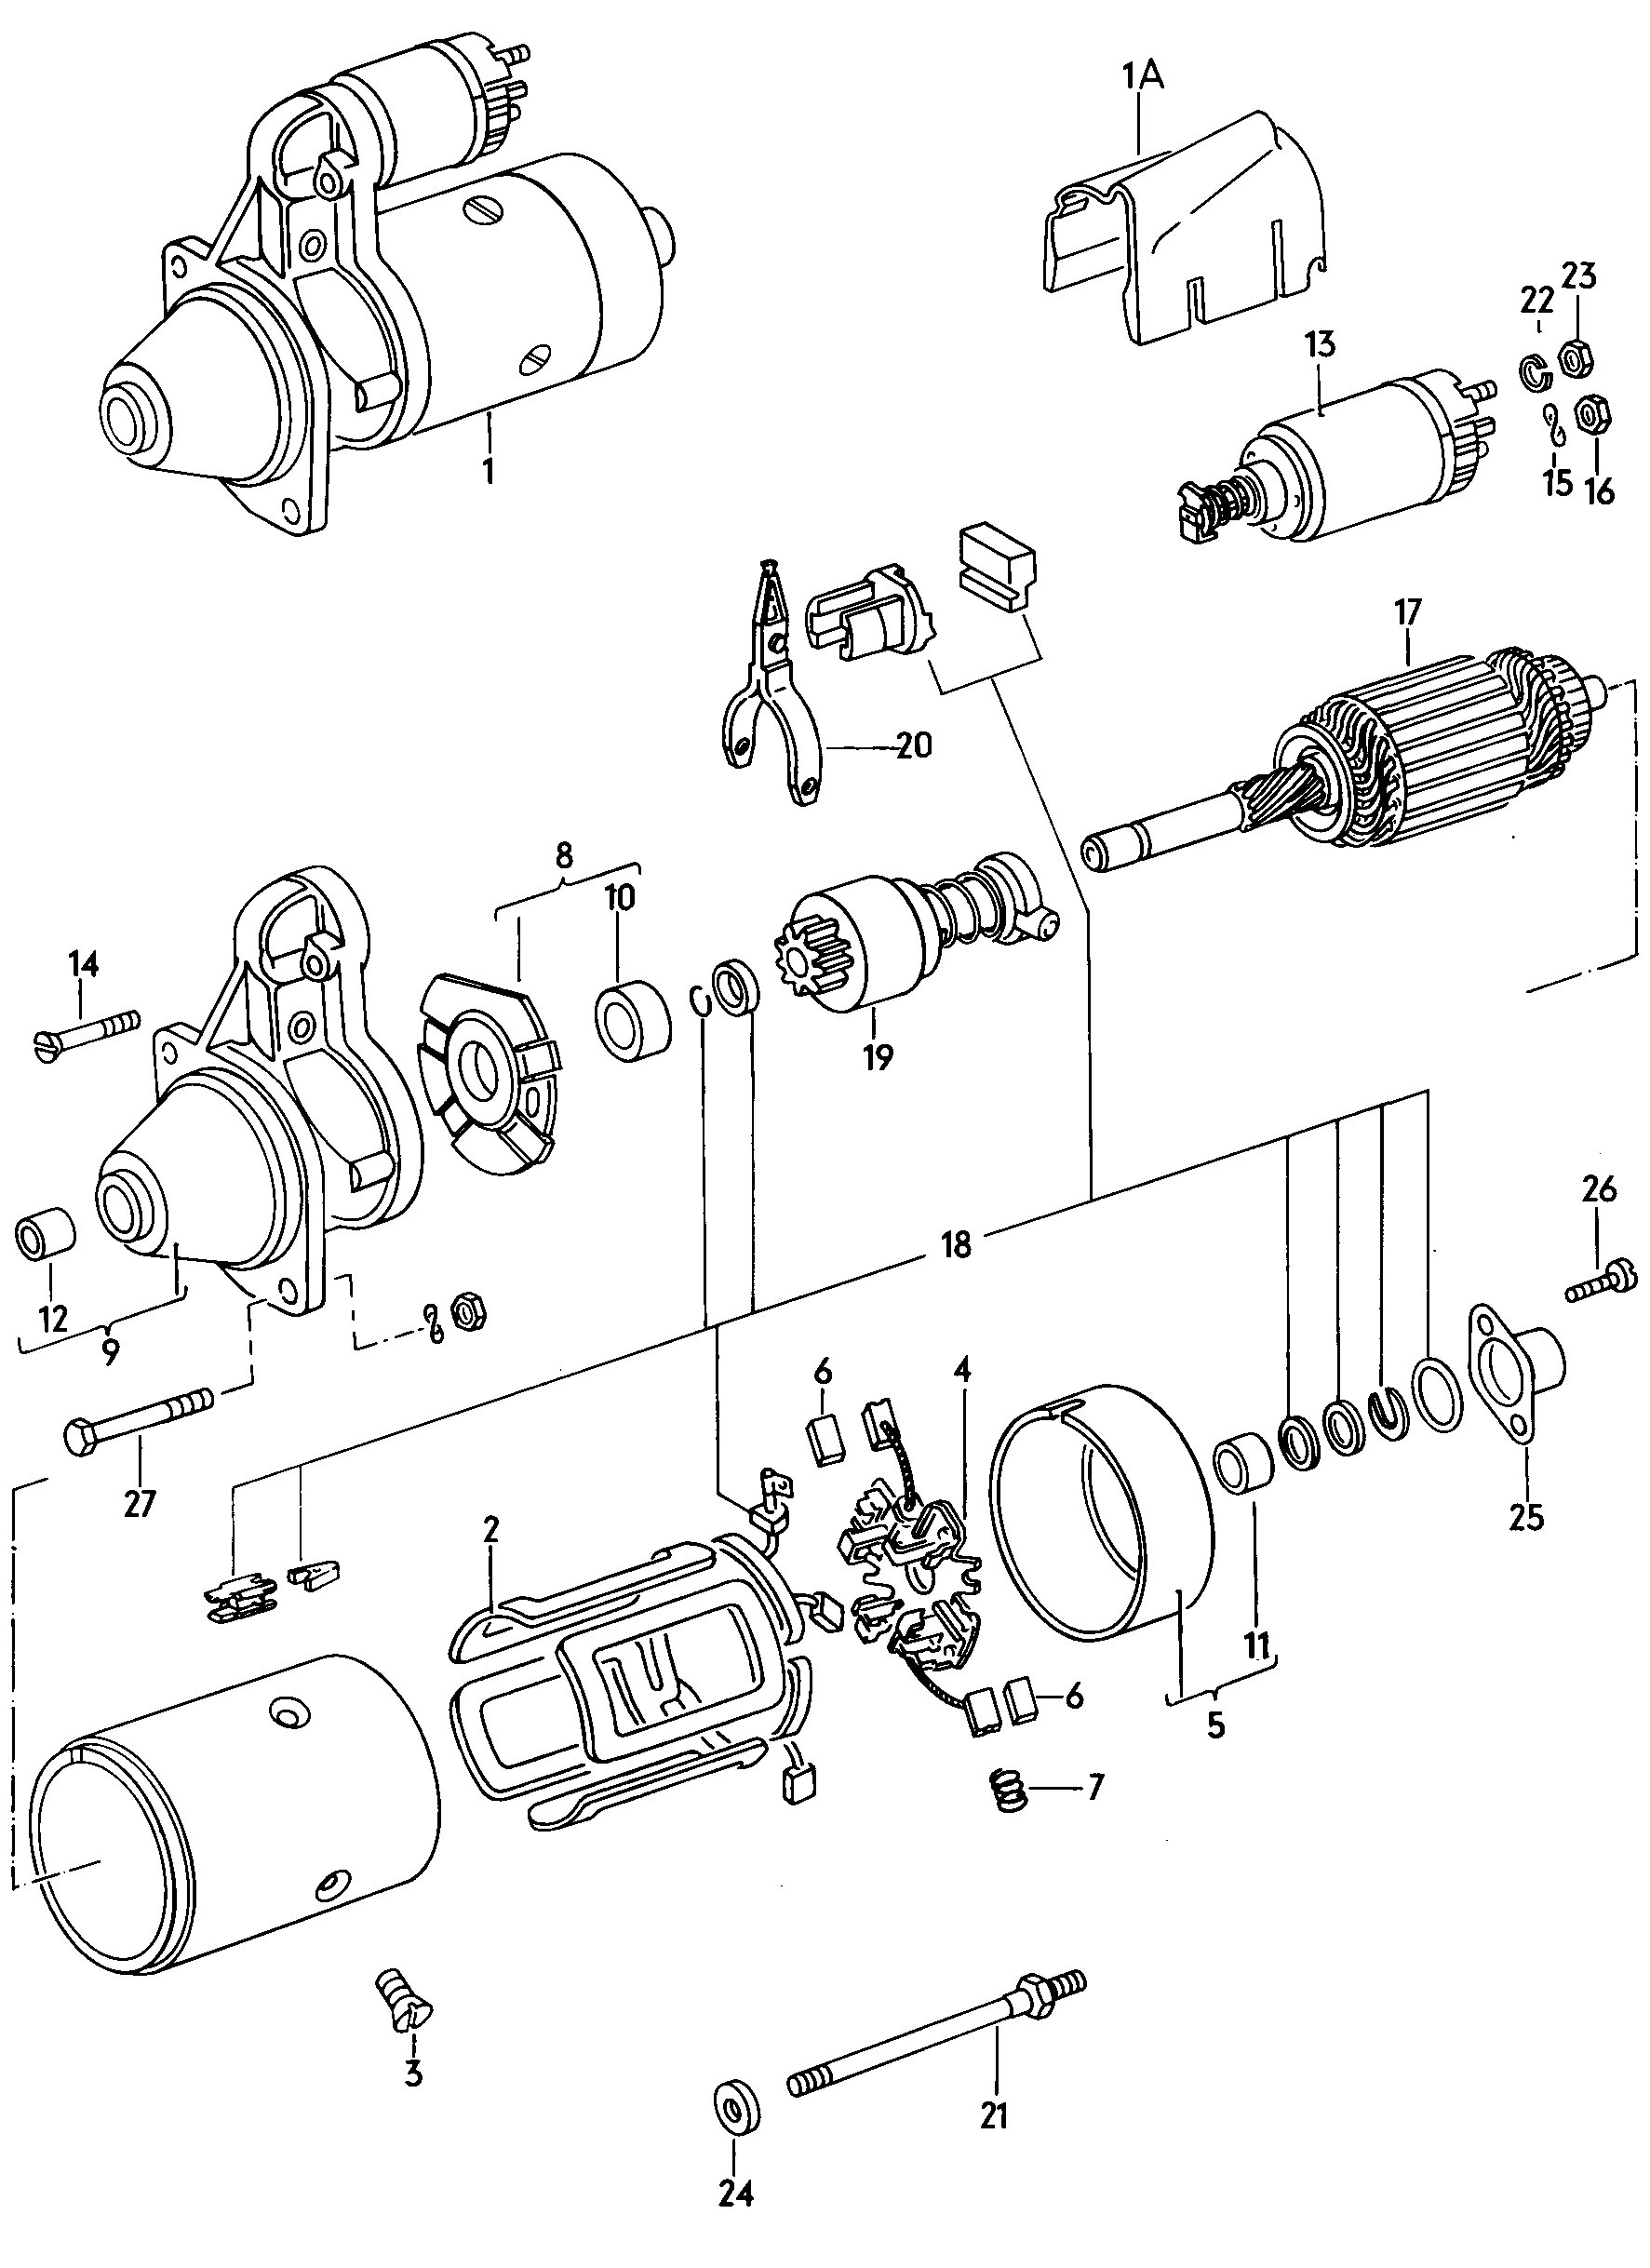 Anlasser und Einzelteile  - Typ 2/syncro - t2